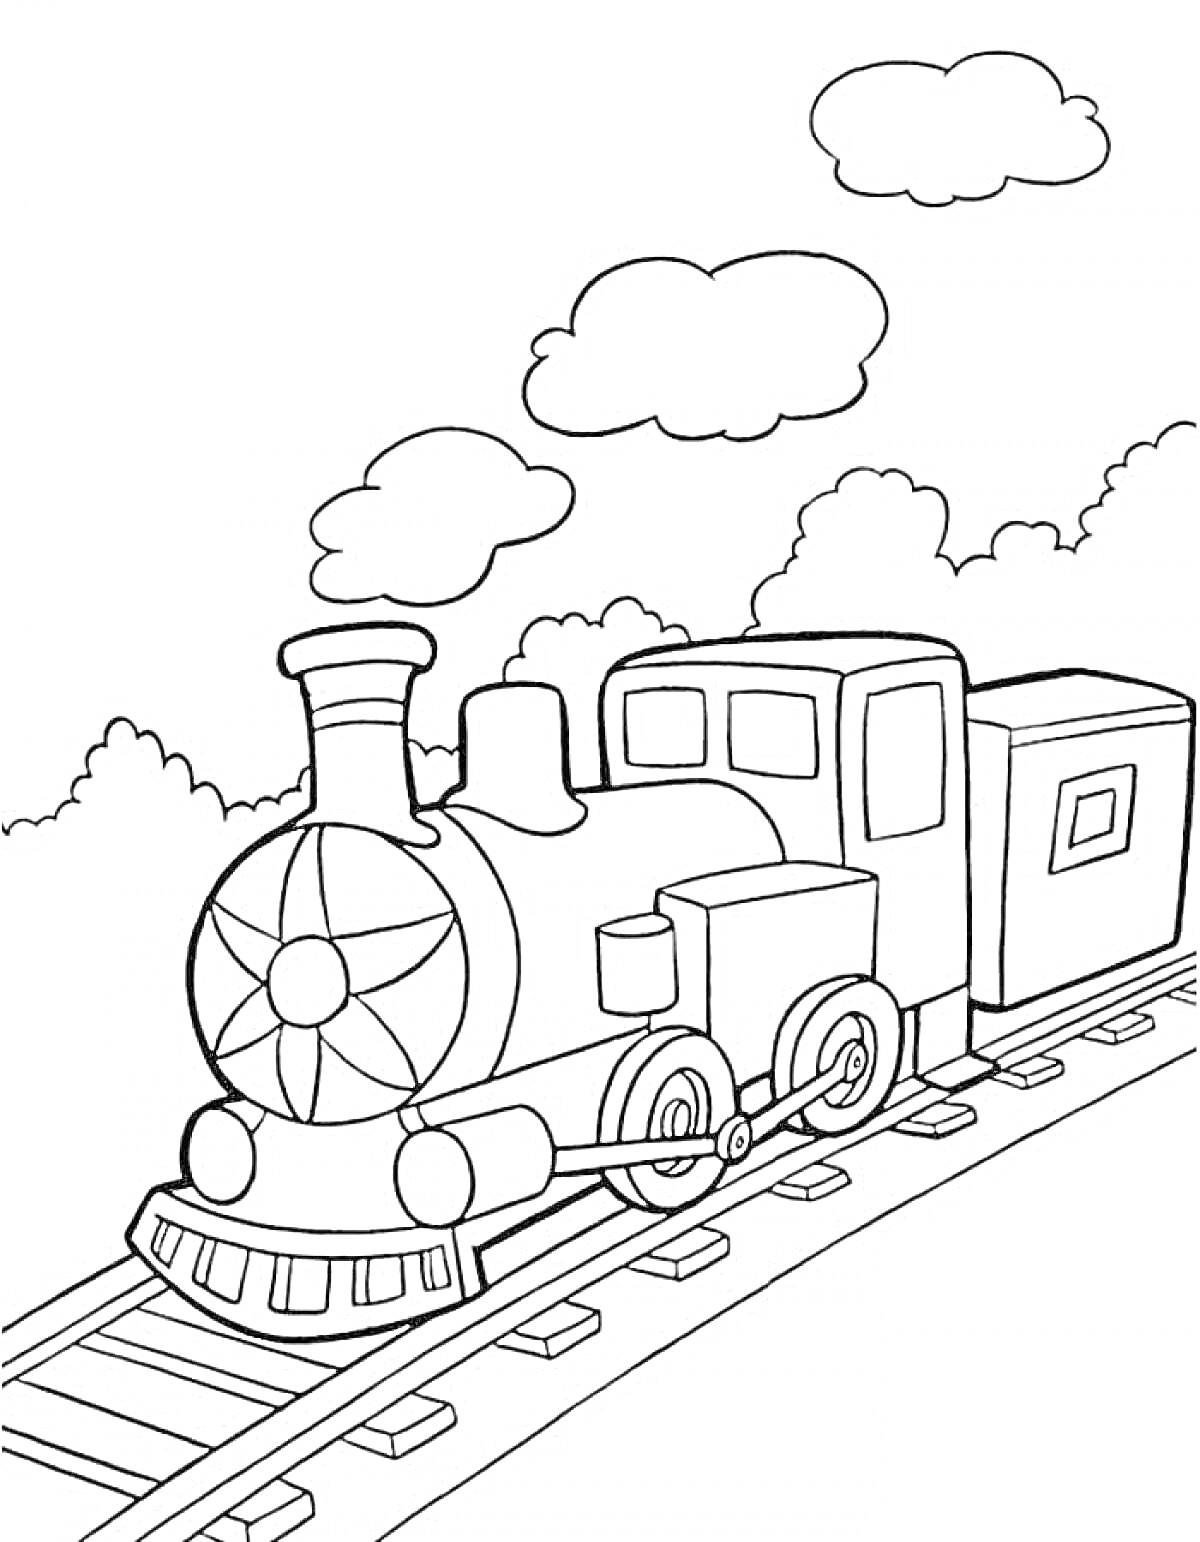 Раскраска Паровоз на железной дороге с дымом и облаками на фоне дерева